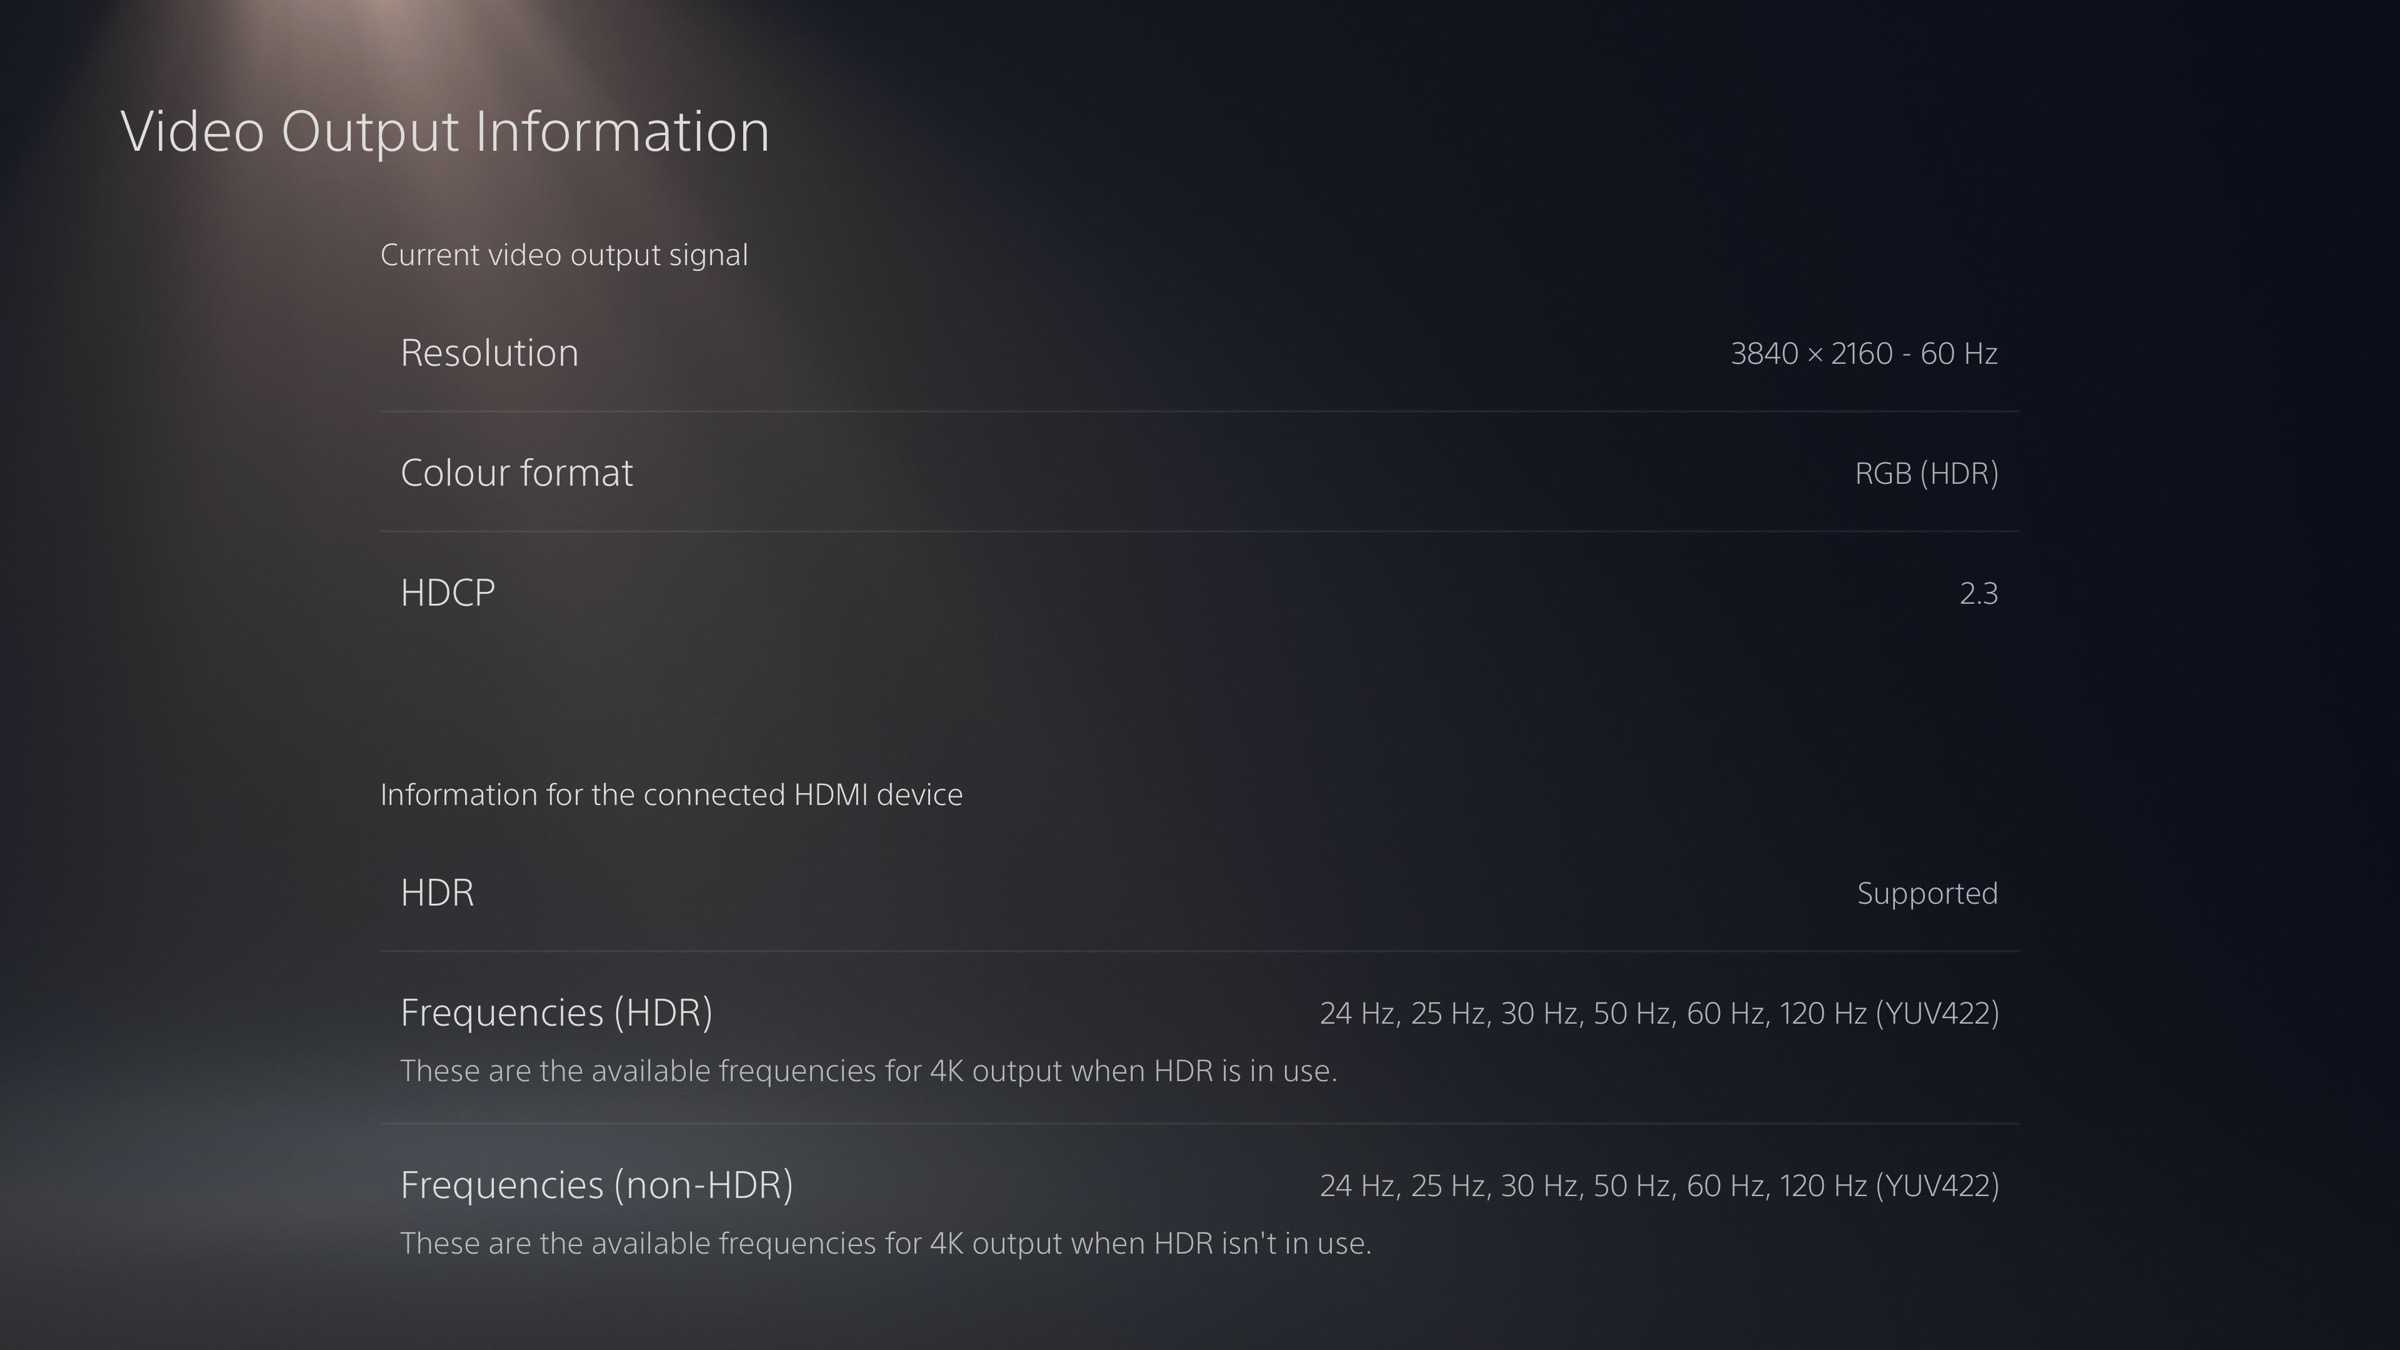 fordelagtige homoseksuel klasse Guide: Opsæt PlayStation 5 til 4K, 120Hz, HDMI 2.1 & HDR - FlatpanelsDK